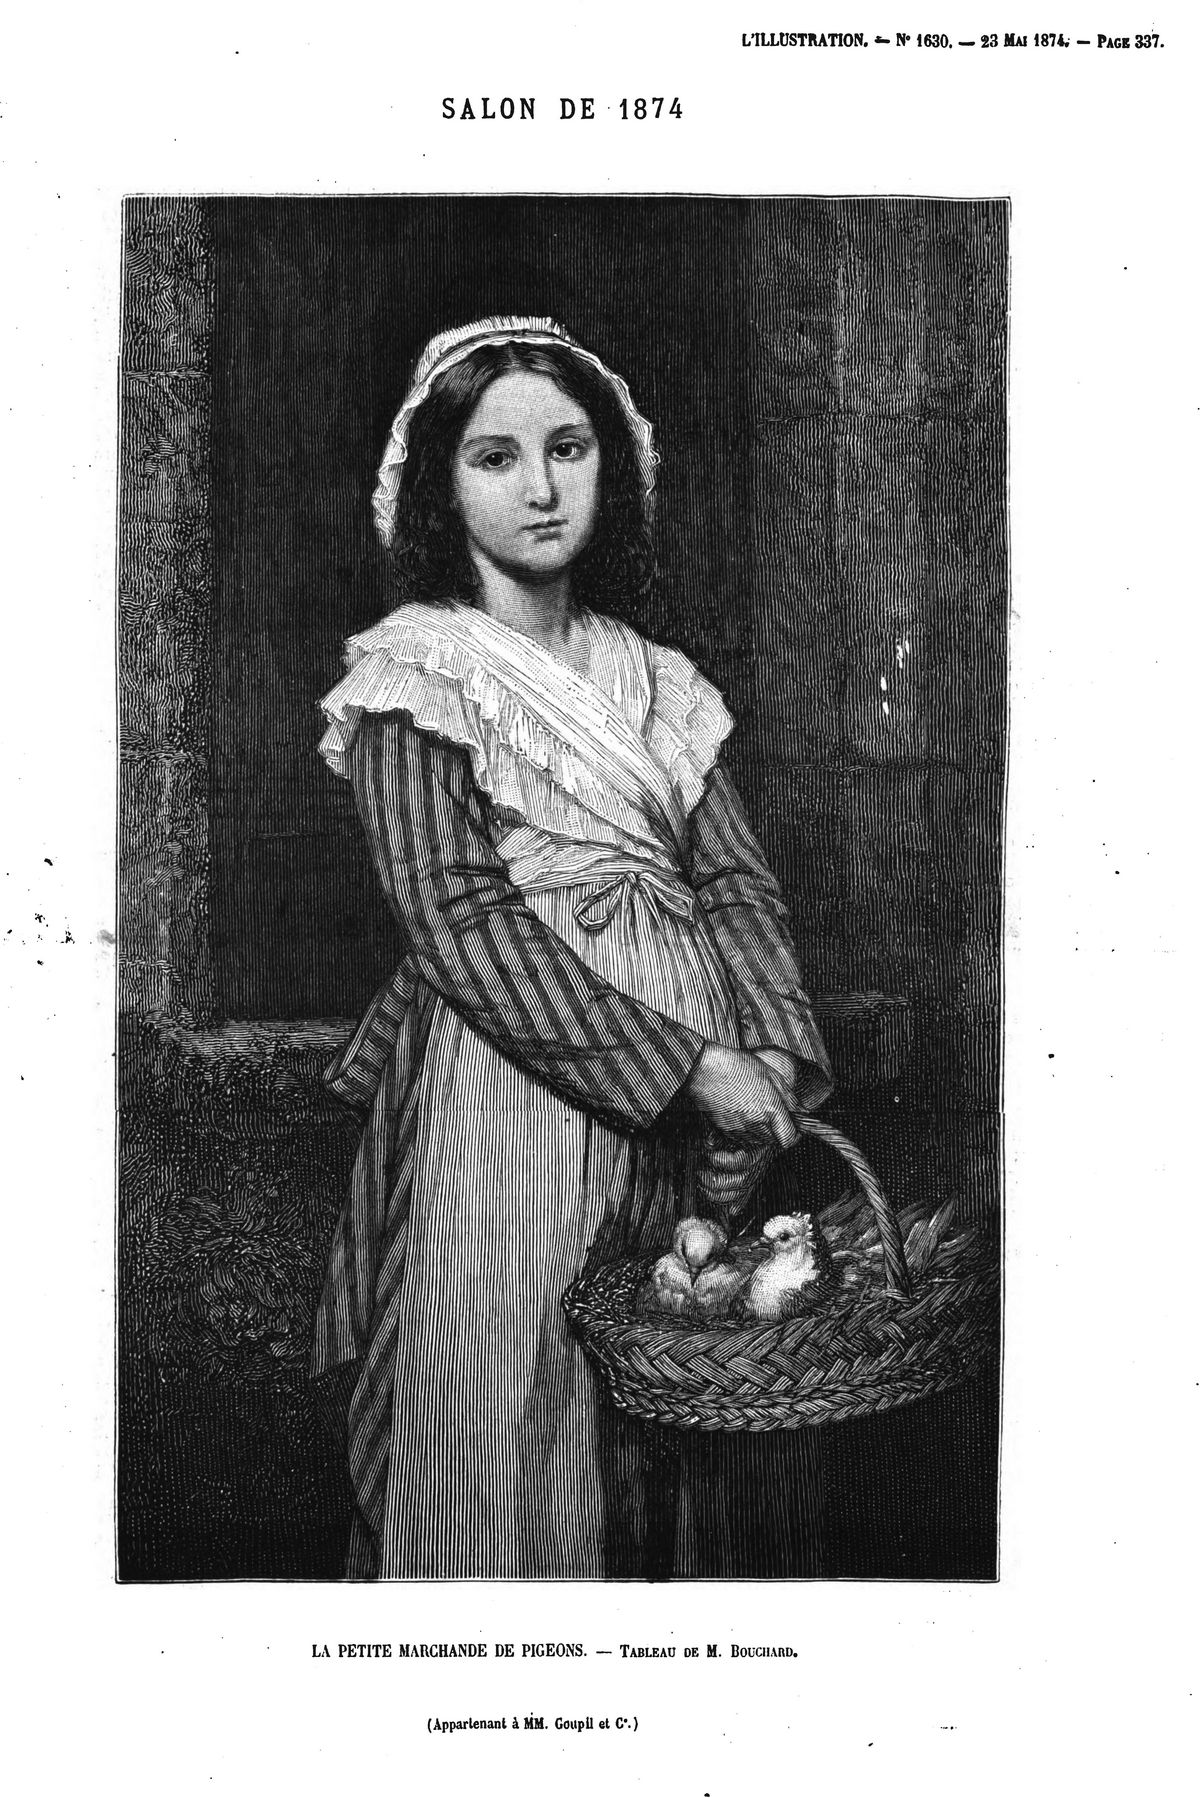 Salou de 1871 : La petite marchande de pigeons, tableau de M. Bouchard. (gravure 1874)